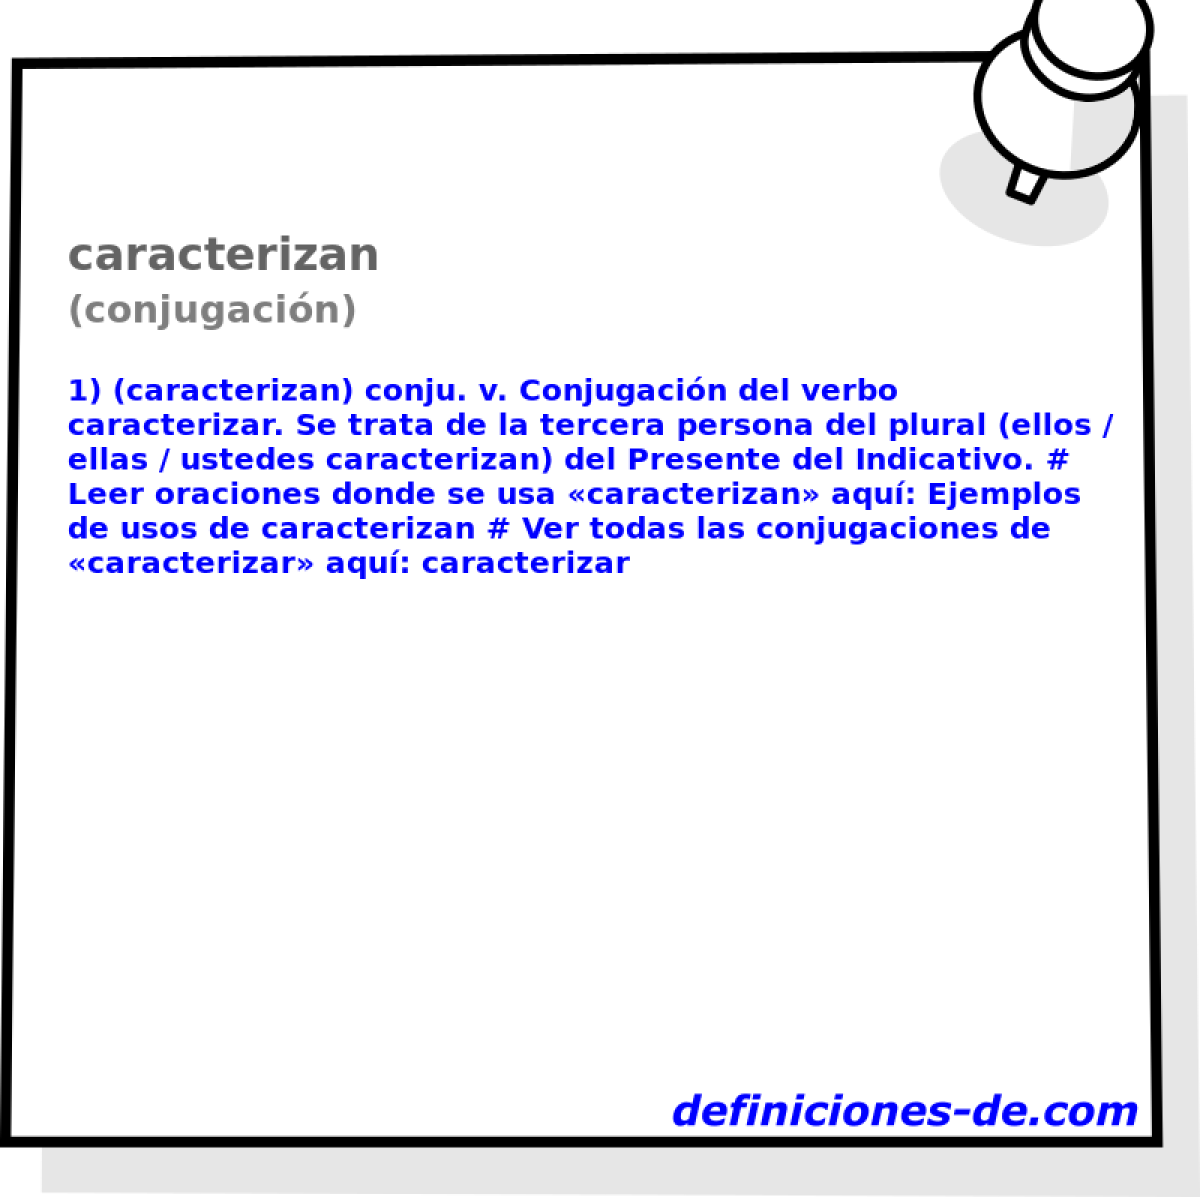 caracterizan (conjugacin)